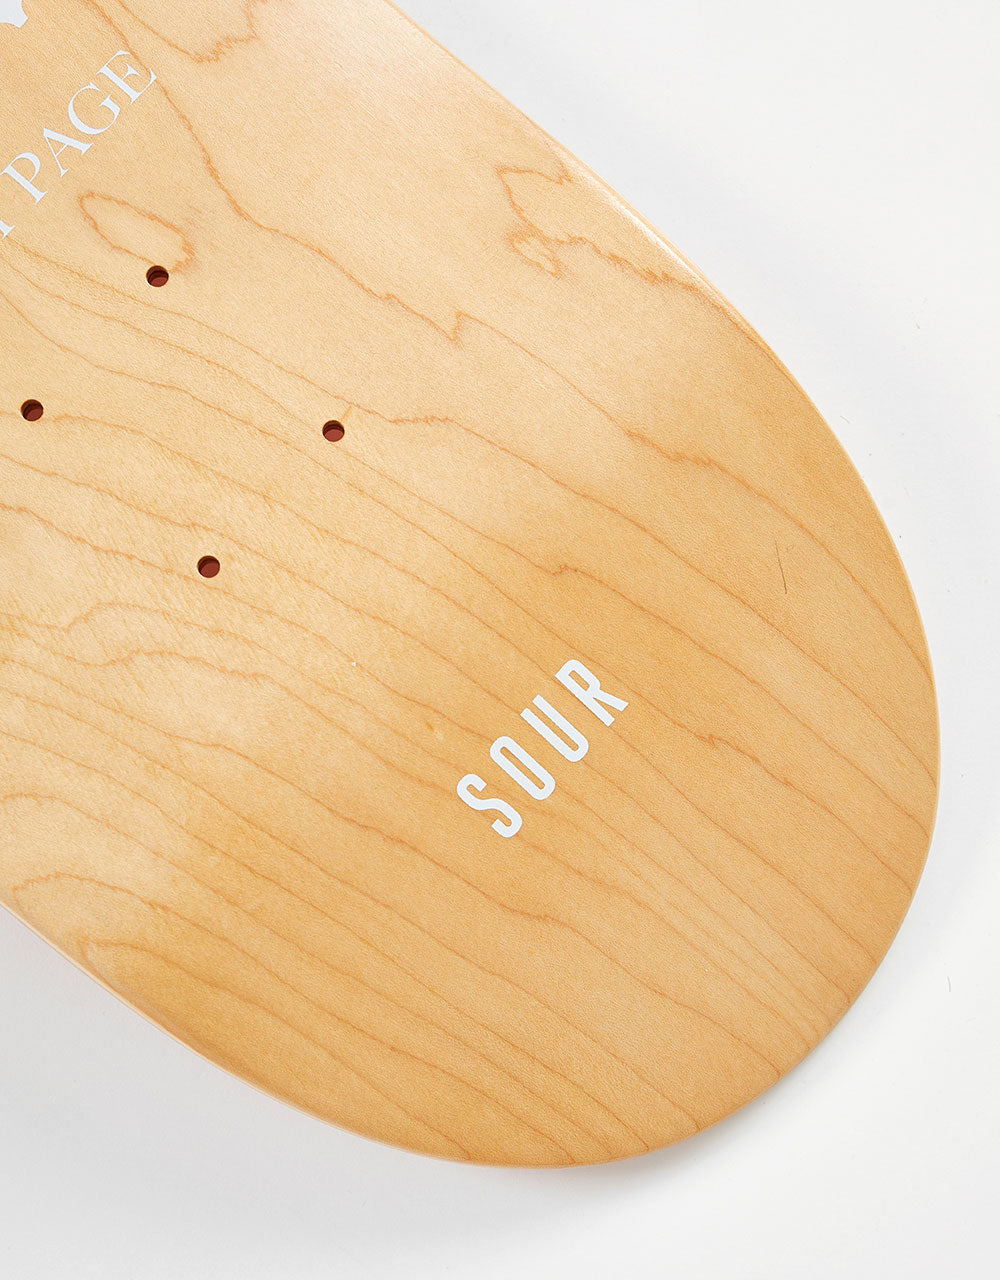 Sour Solution Barney Stamp Skateboard Deck - 8.5"